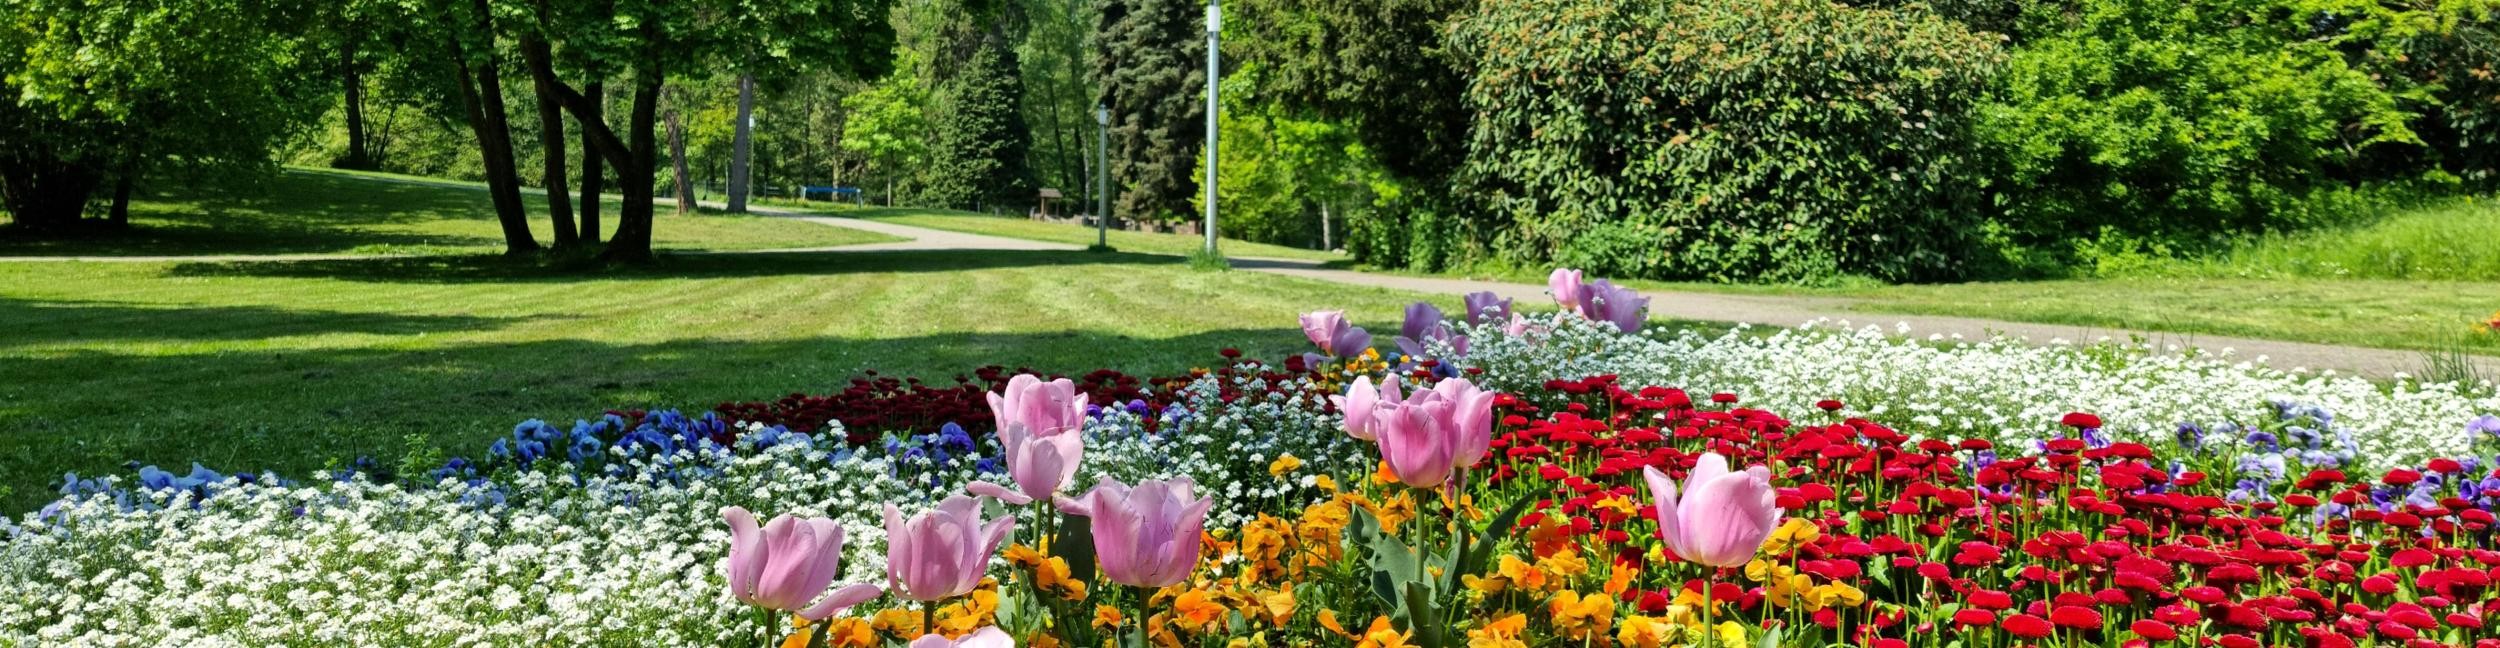 Stadtparks Blumenbeet im Vordergrund mit dem Park im Hintergrund